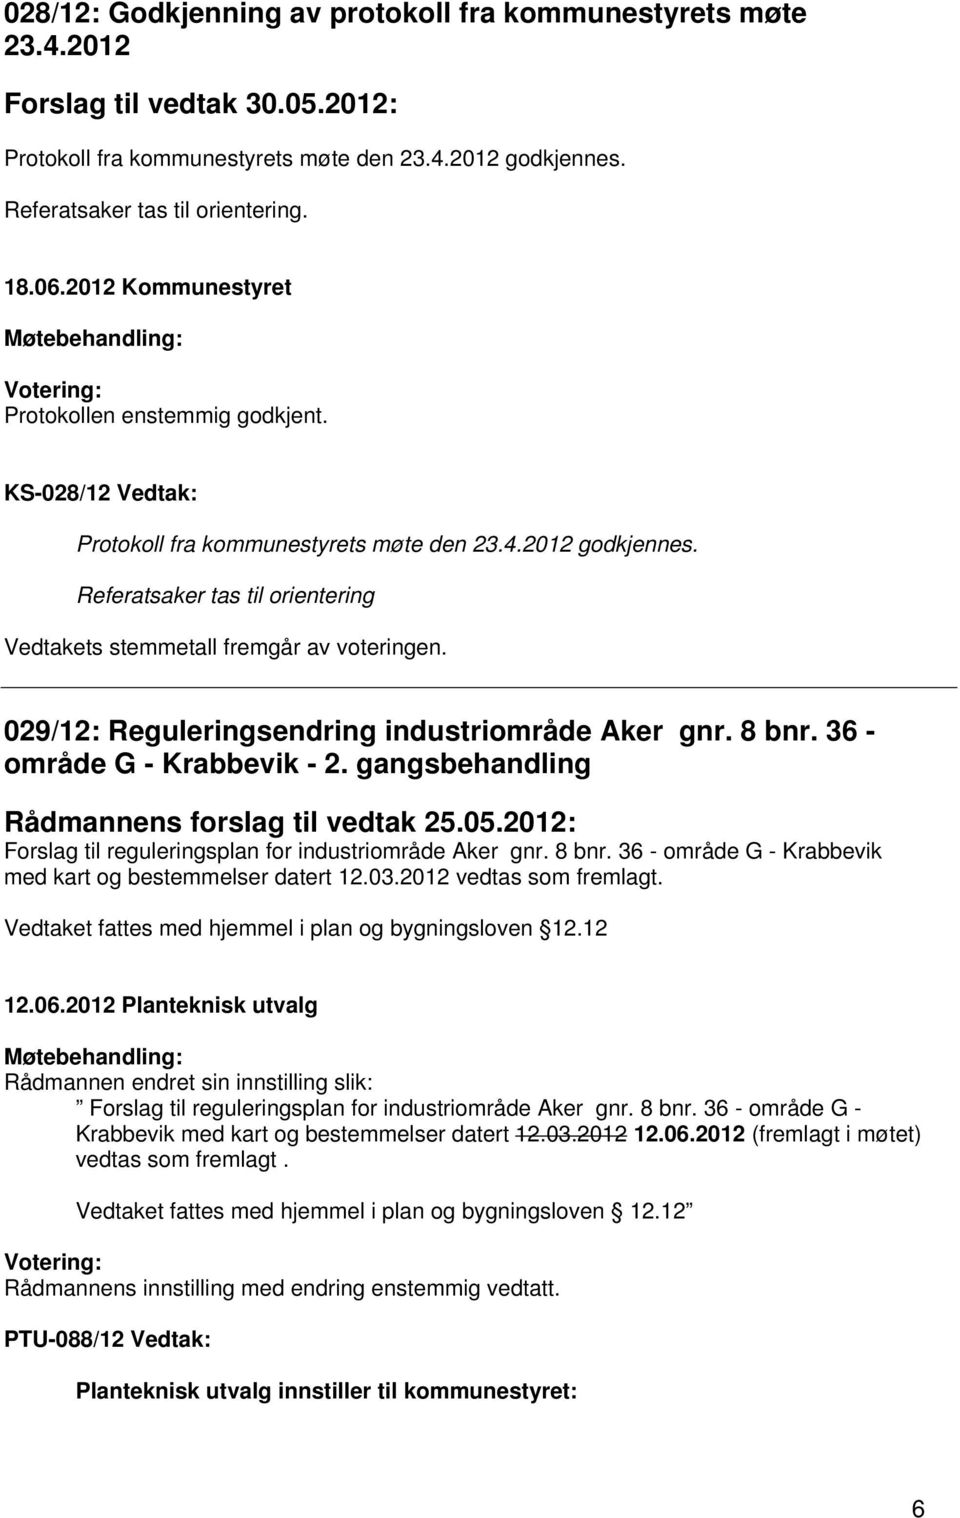 029/12: Reguleringsendring industriområde Aker gnr. 8 bnr. 36 - område G - Krabbevik - 2. gangsbehandling Rådmannens forslag til vedtak 25.05.